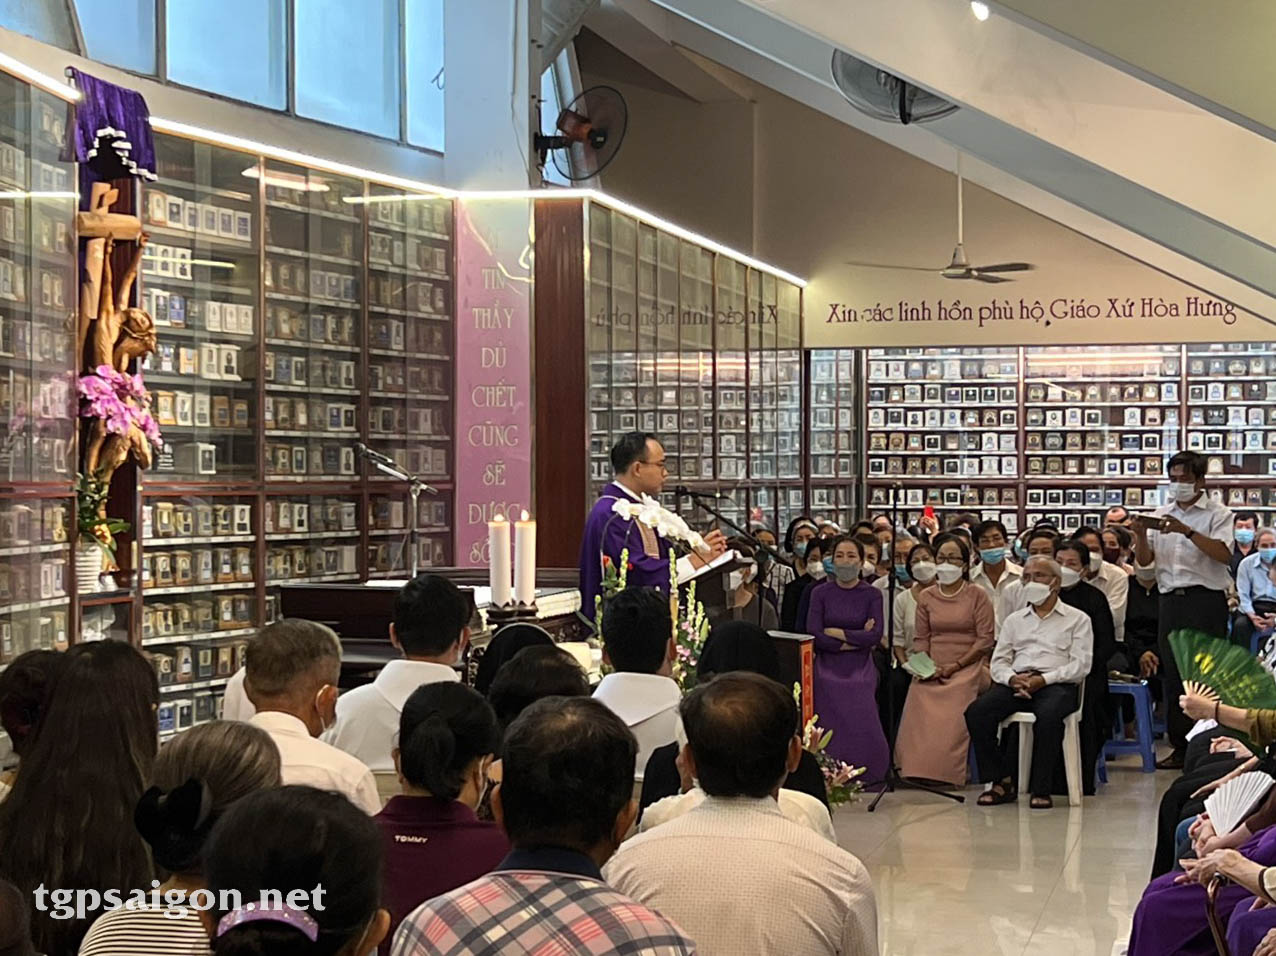 TGP.Sài Gòn - Giáo xứ Hòa Hưng: Sống mầu nhiệm các thánh thông công 2-11-2022